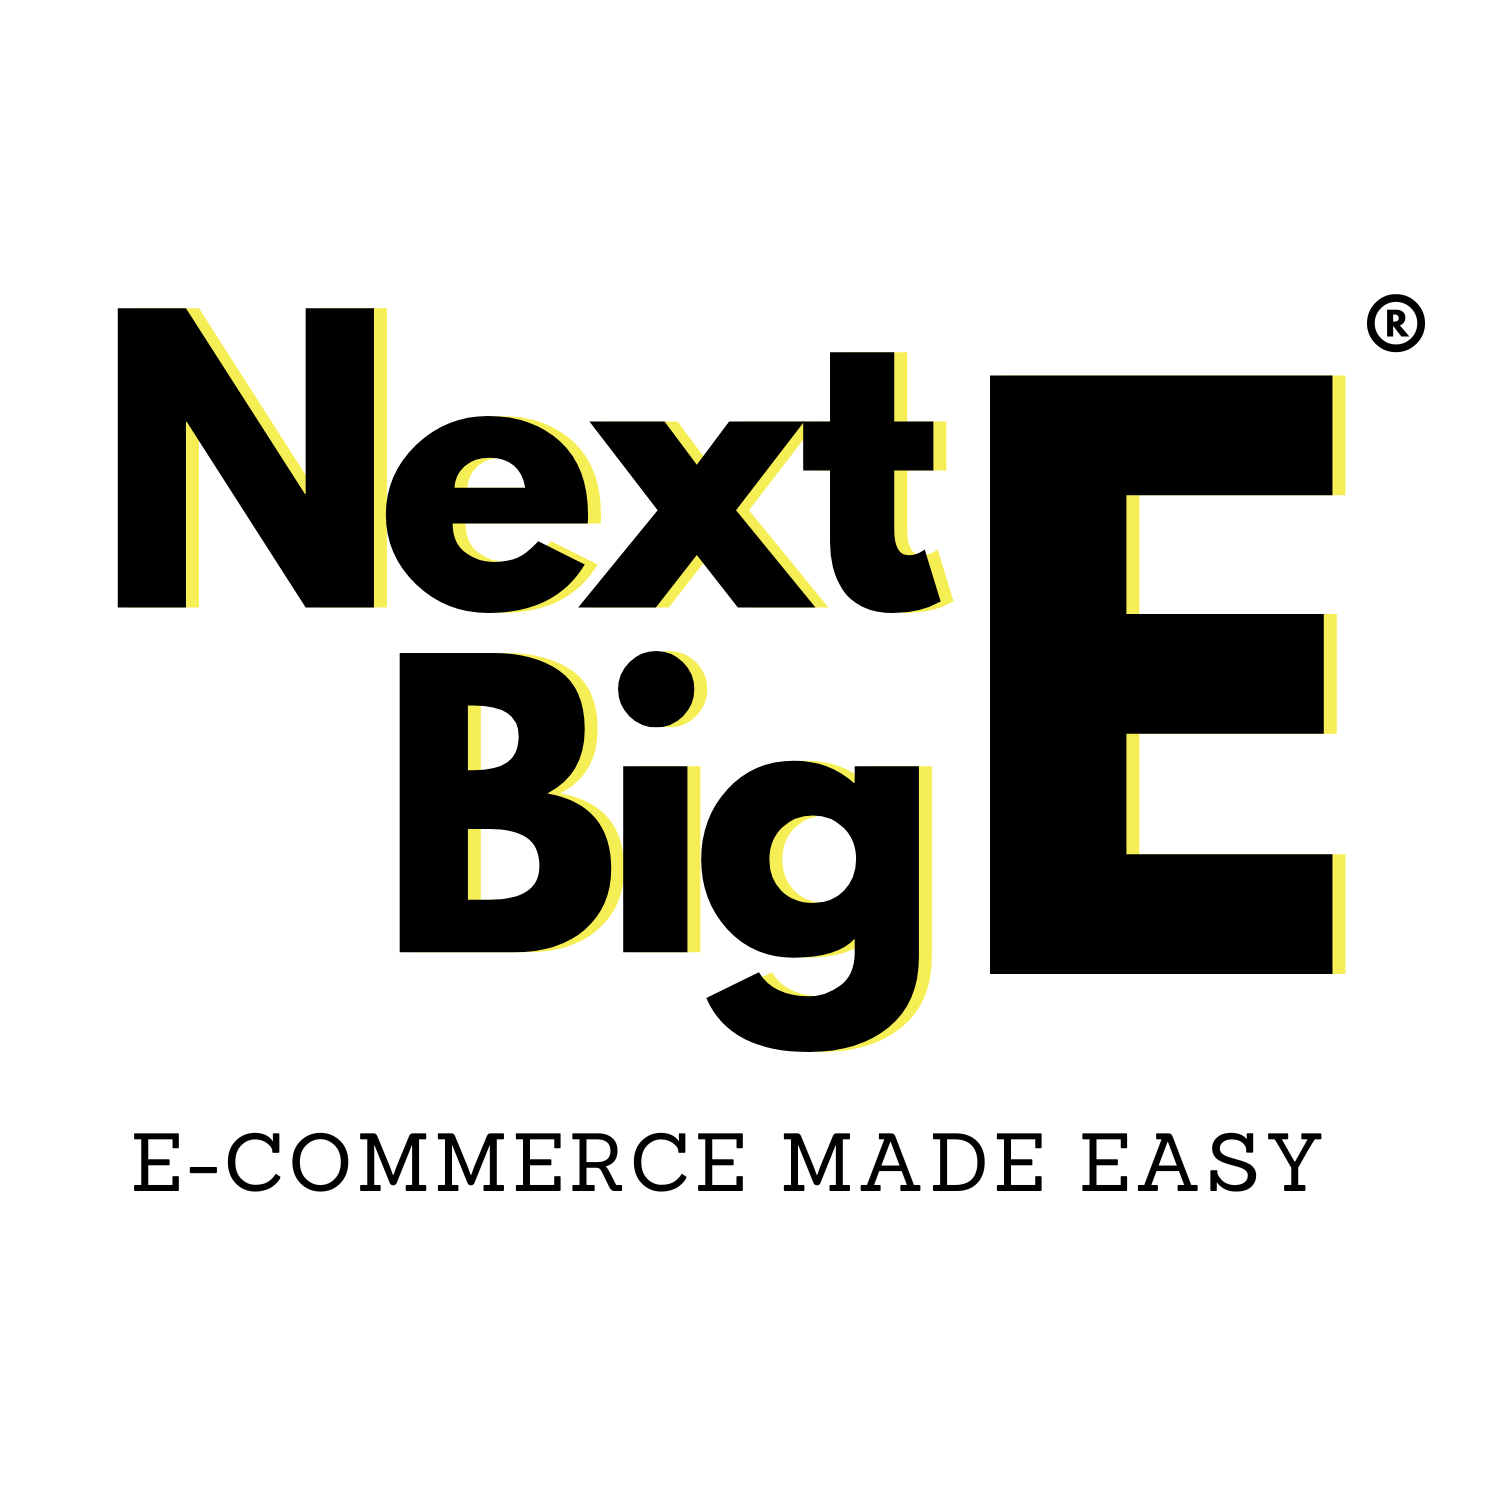 NextBigE logo